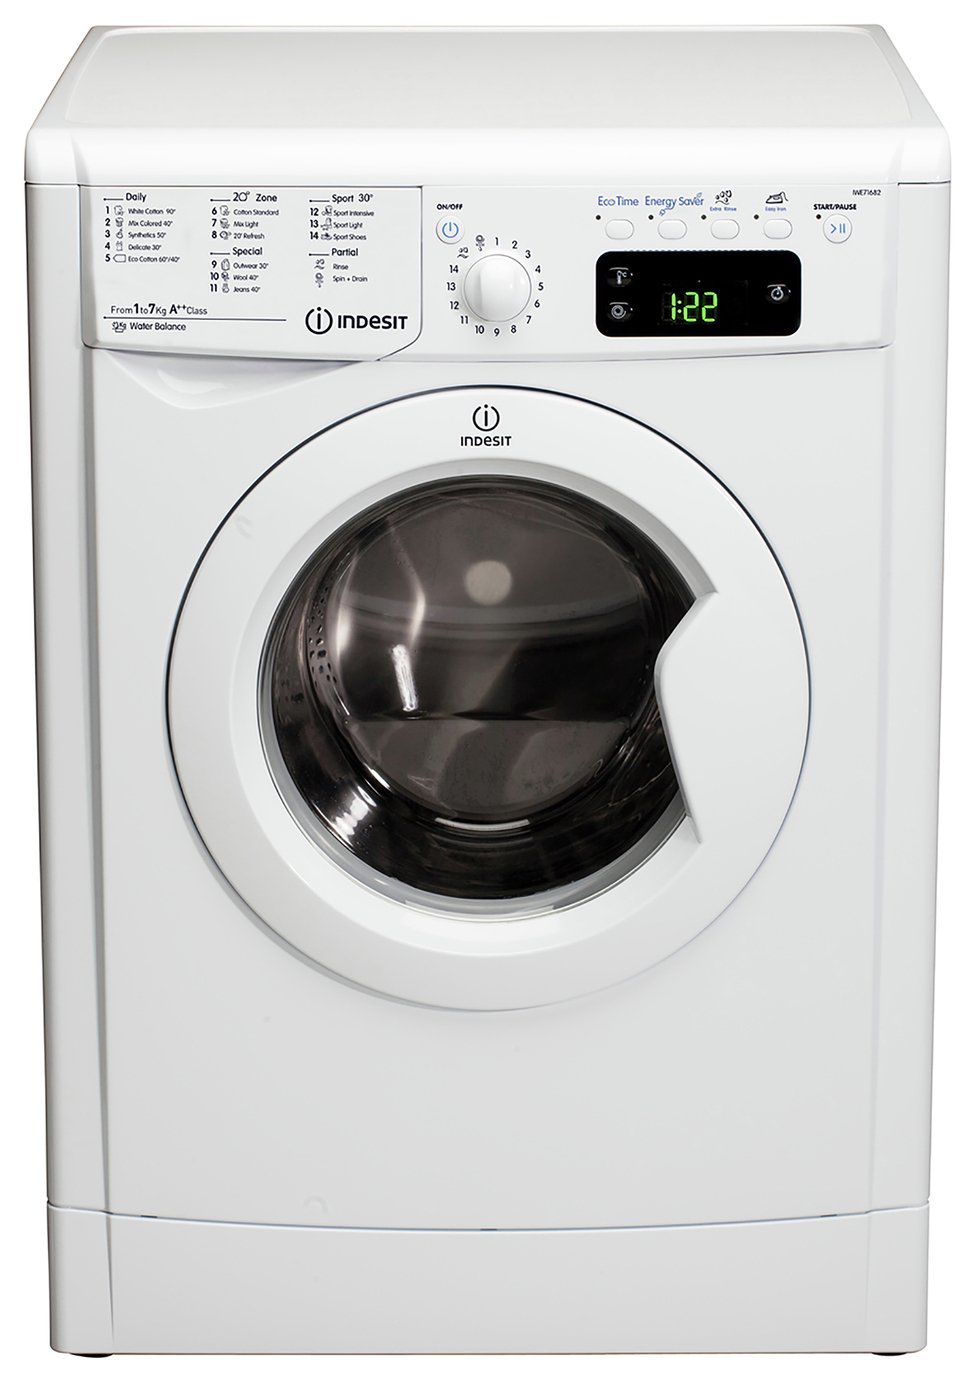 Indesit IWE71682WECO 7KG 1600 Spin Washing Machine review